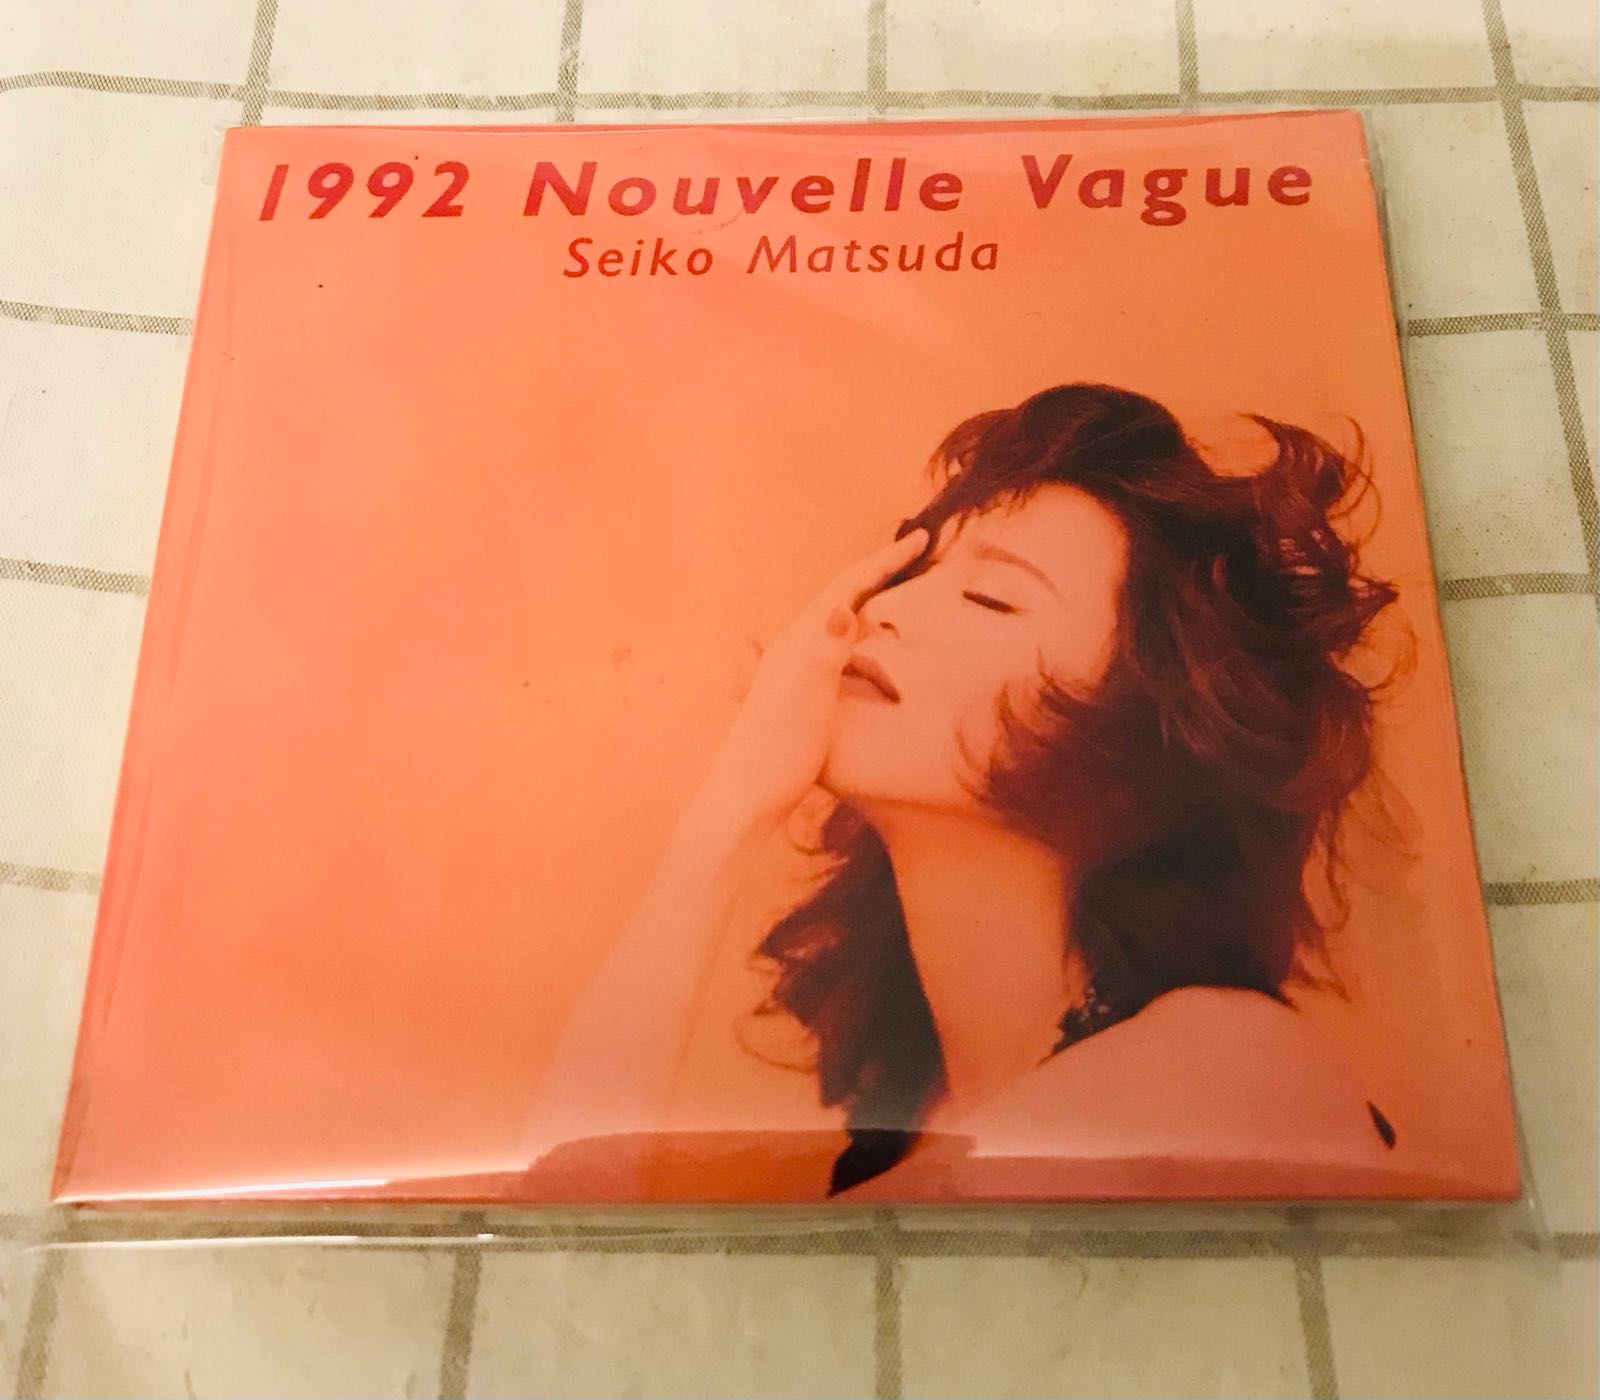 松田聖子 日本版1992 Nouvelle Vague暢銷專輯，紙盒精裝版本，收錄10首經典暢銷歌曲，已絕版，值得珍藏。